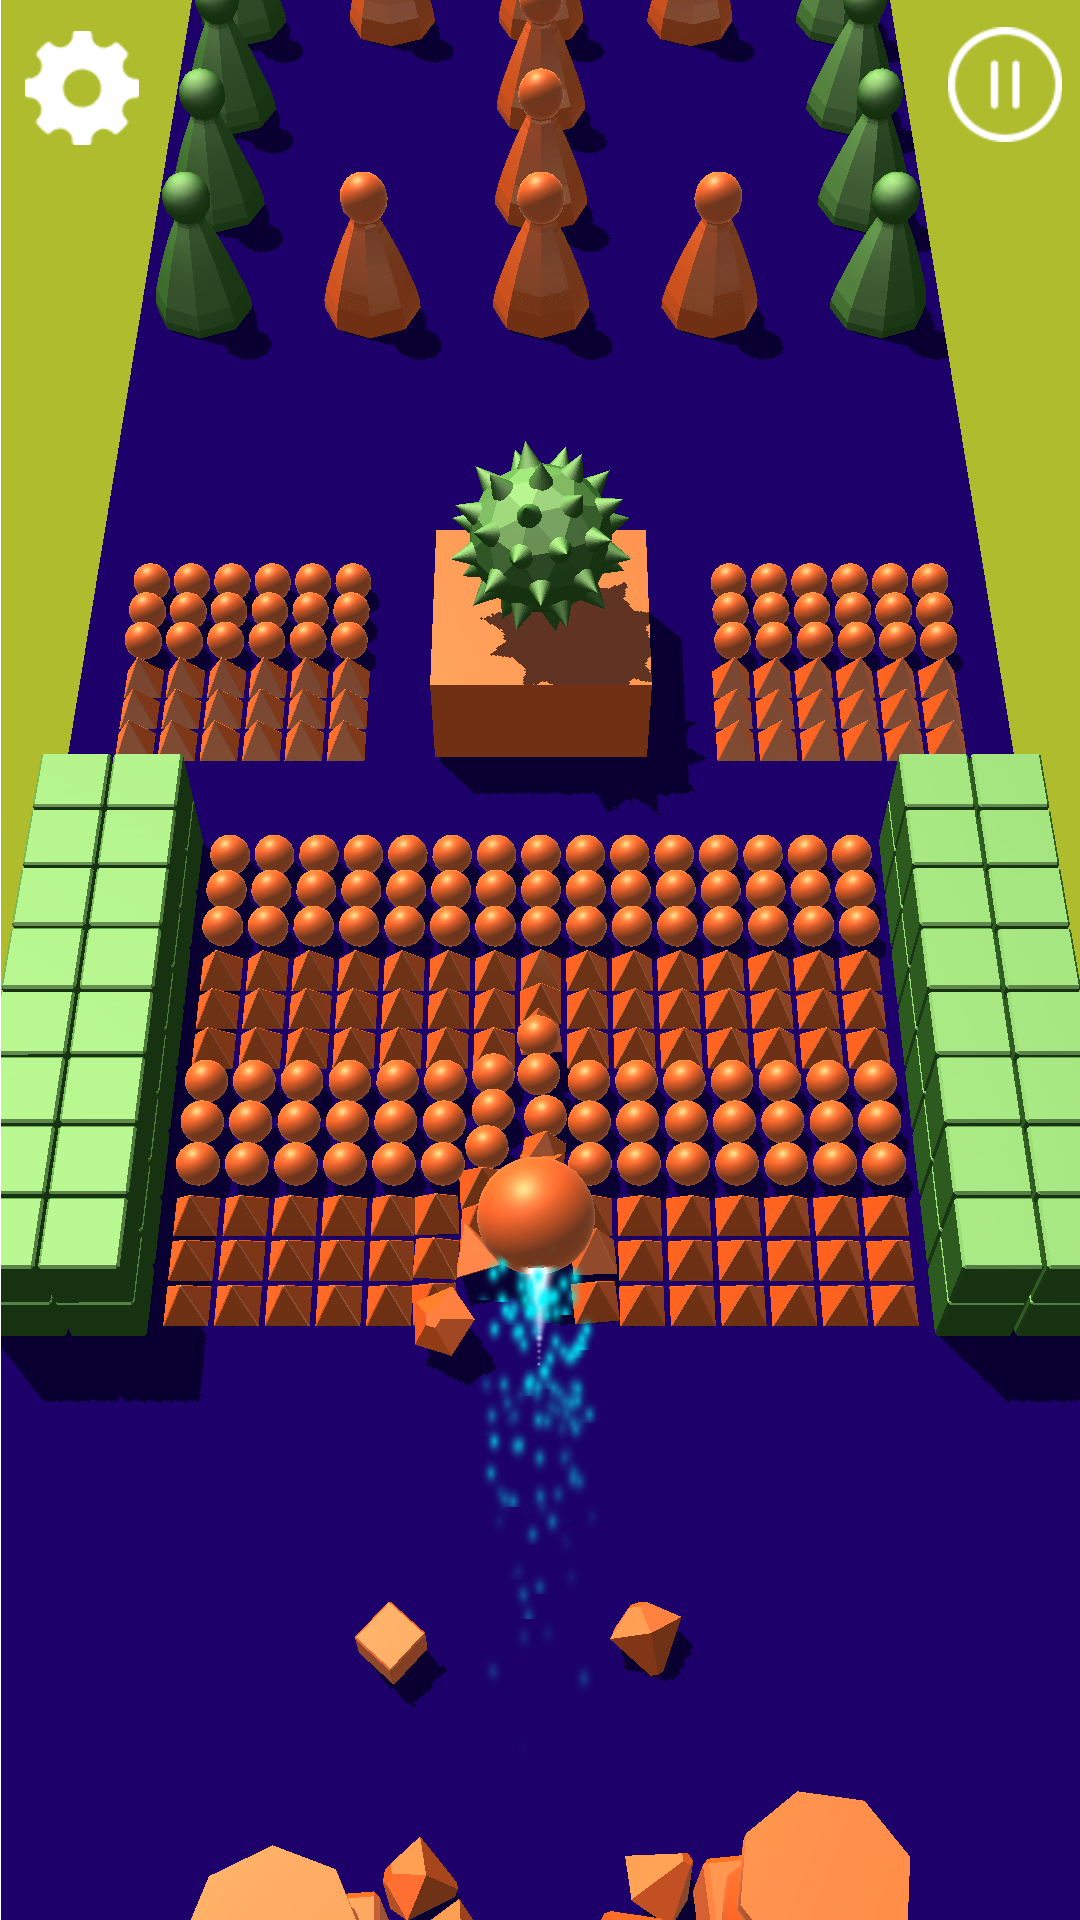 Color Dot 3D : Ball bump game screenshot game